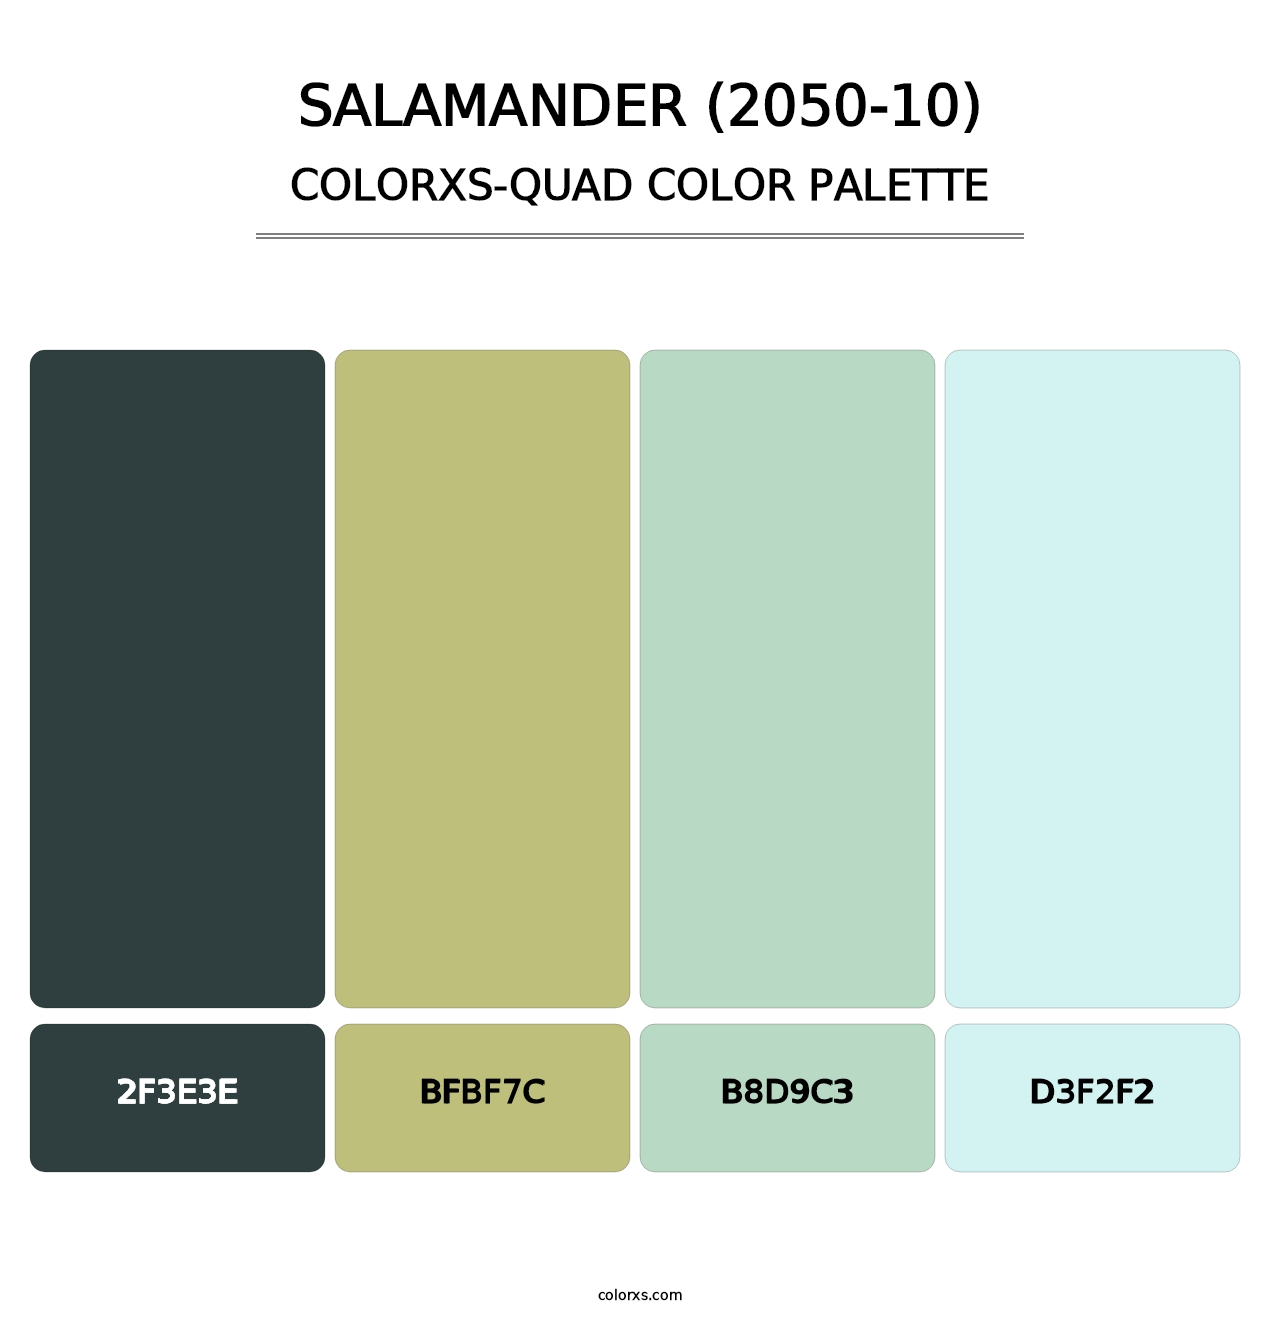 Salamander (2050-10) - Colorxs Quad Palette